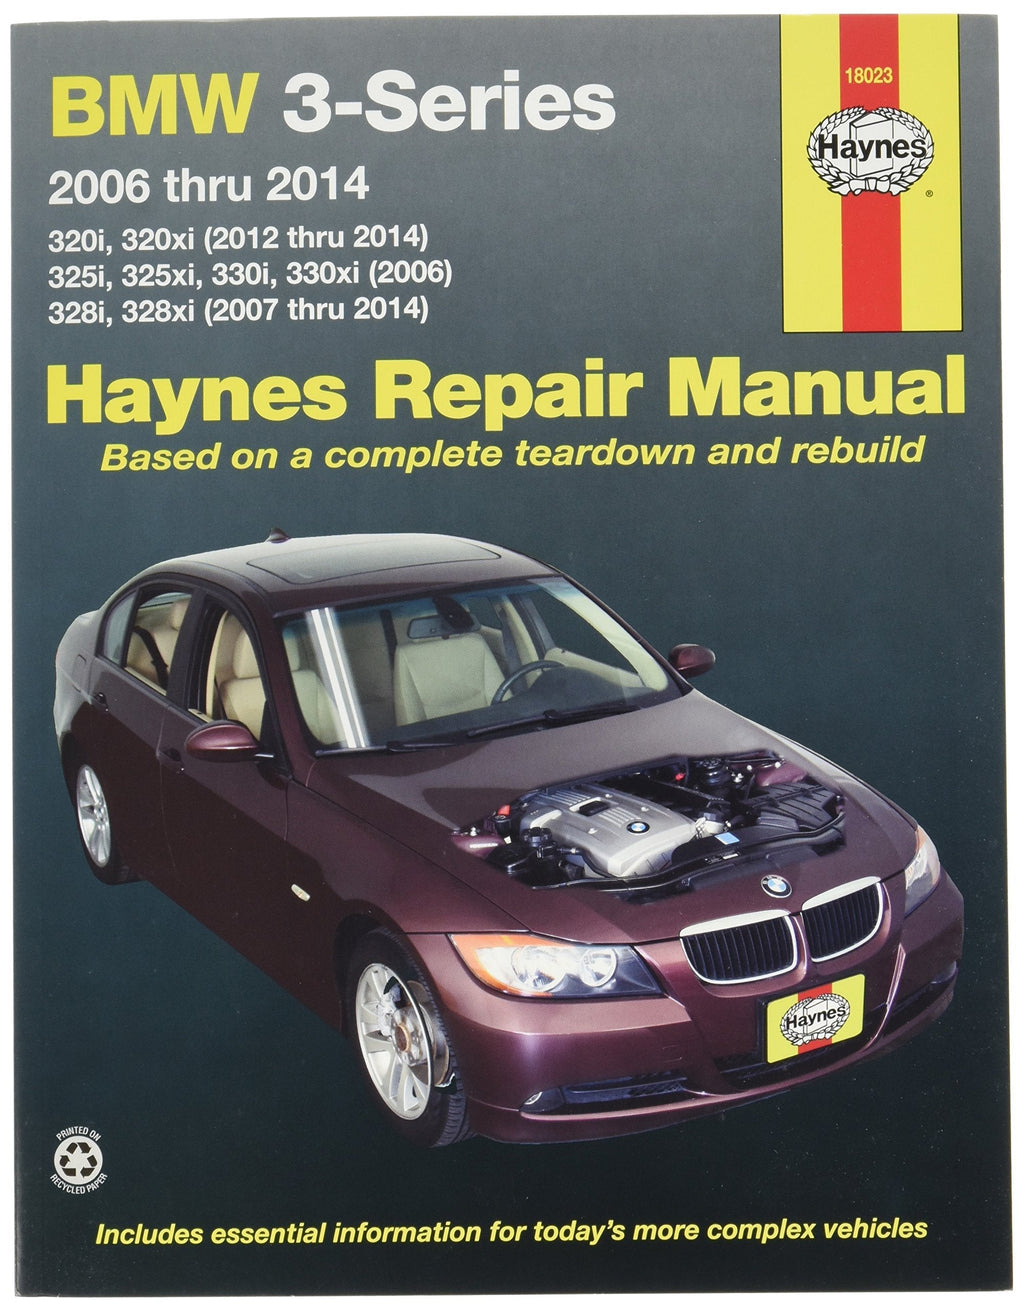 Haynes Repair Manuals BMW 3-Series 2006-2014 (18023) - LeoForward Australia